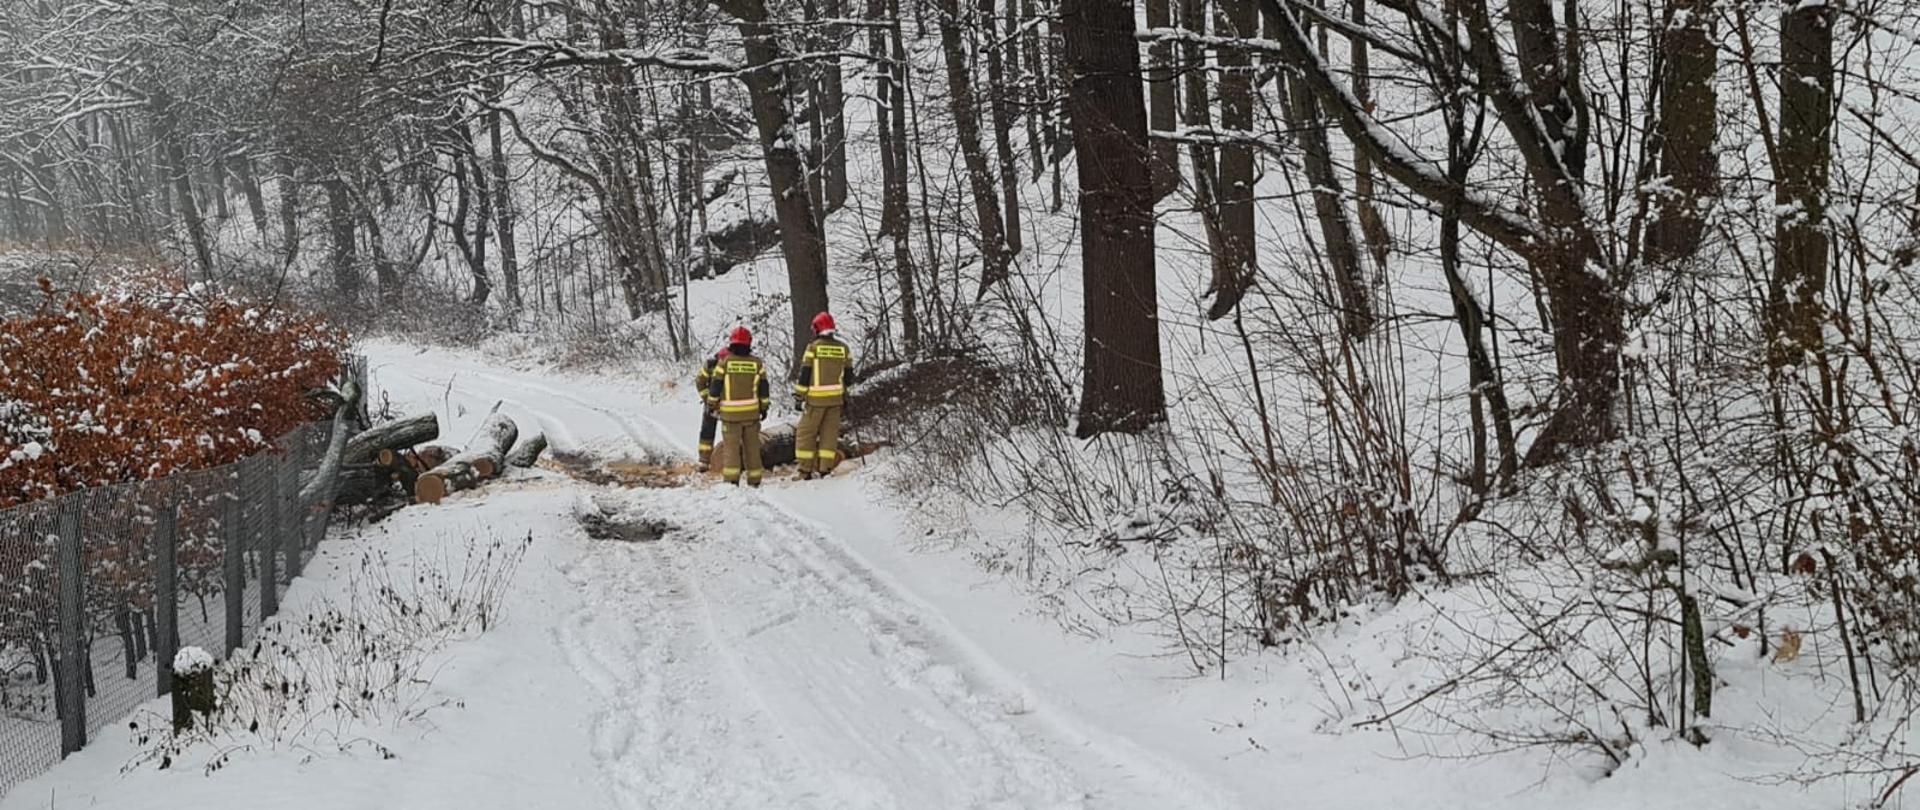 Obraz przedstawia zaśnieżoną drogę. Na drodze leży powalone drzewo. Przy drzewie trzech strażaków w umundurowaniu specjalnym, którzy tną drzewo za pomocą pilarki na mniejsze kawałki. Wokół drzewa pokryte śniegiem.